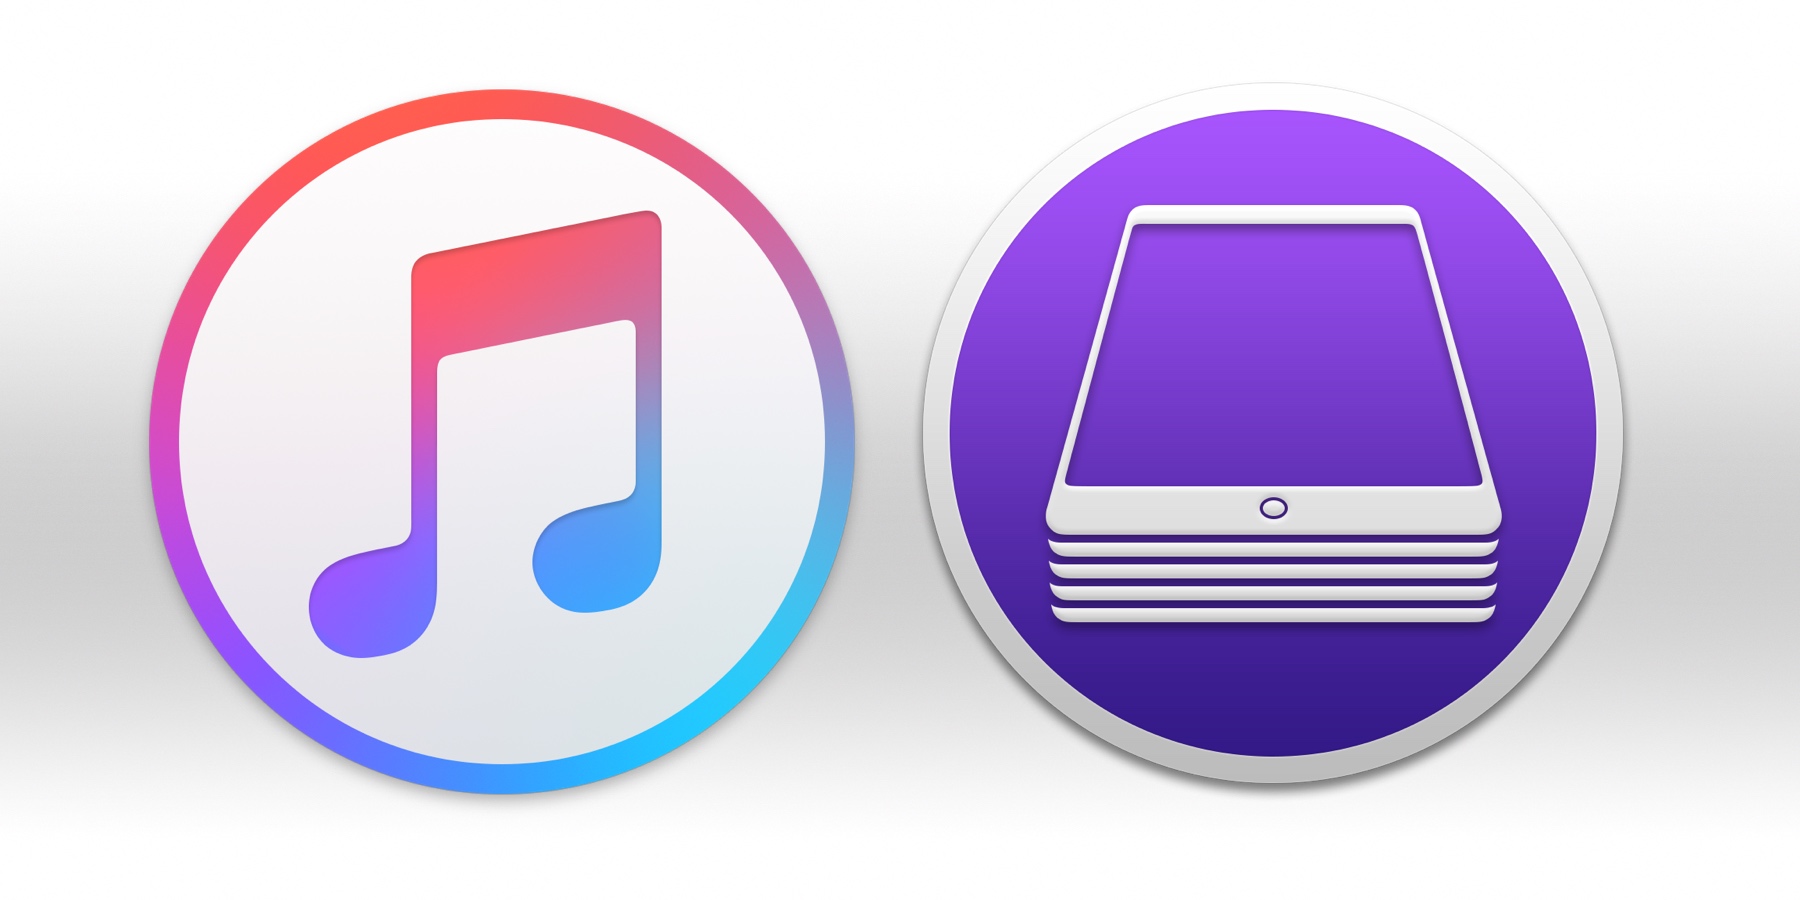 Czy to już kres iTunesa? Podcasty, TV, Muzyka jako osobne aplikacje